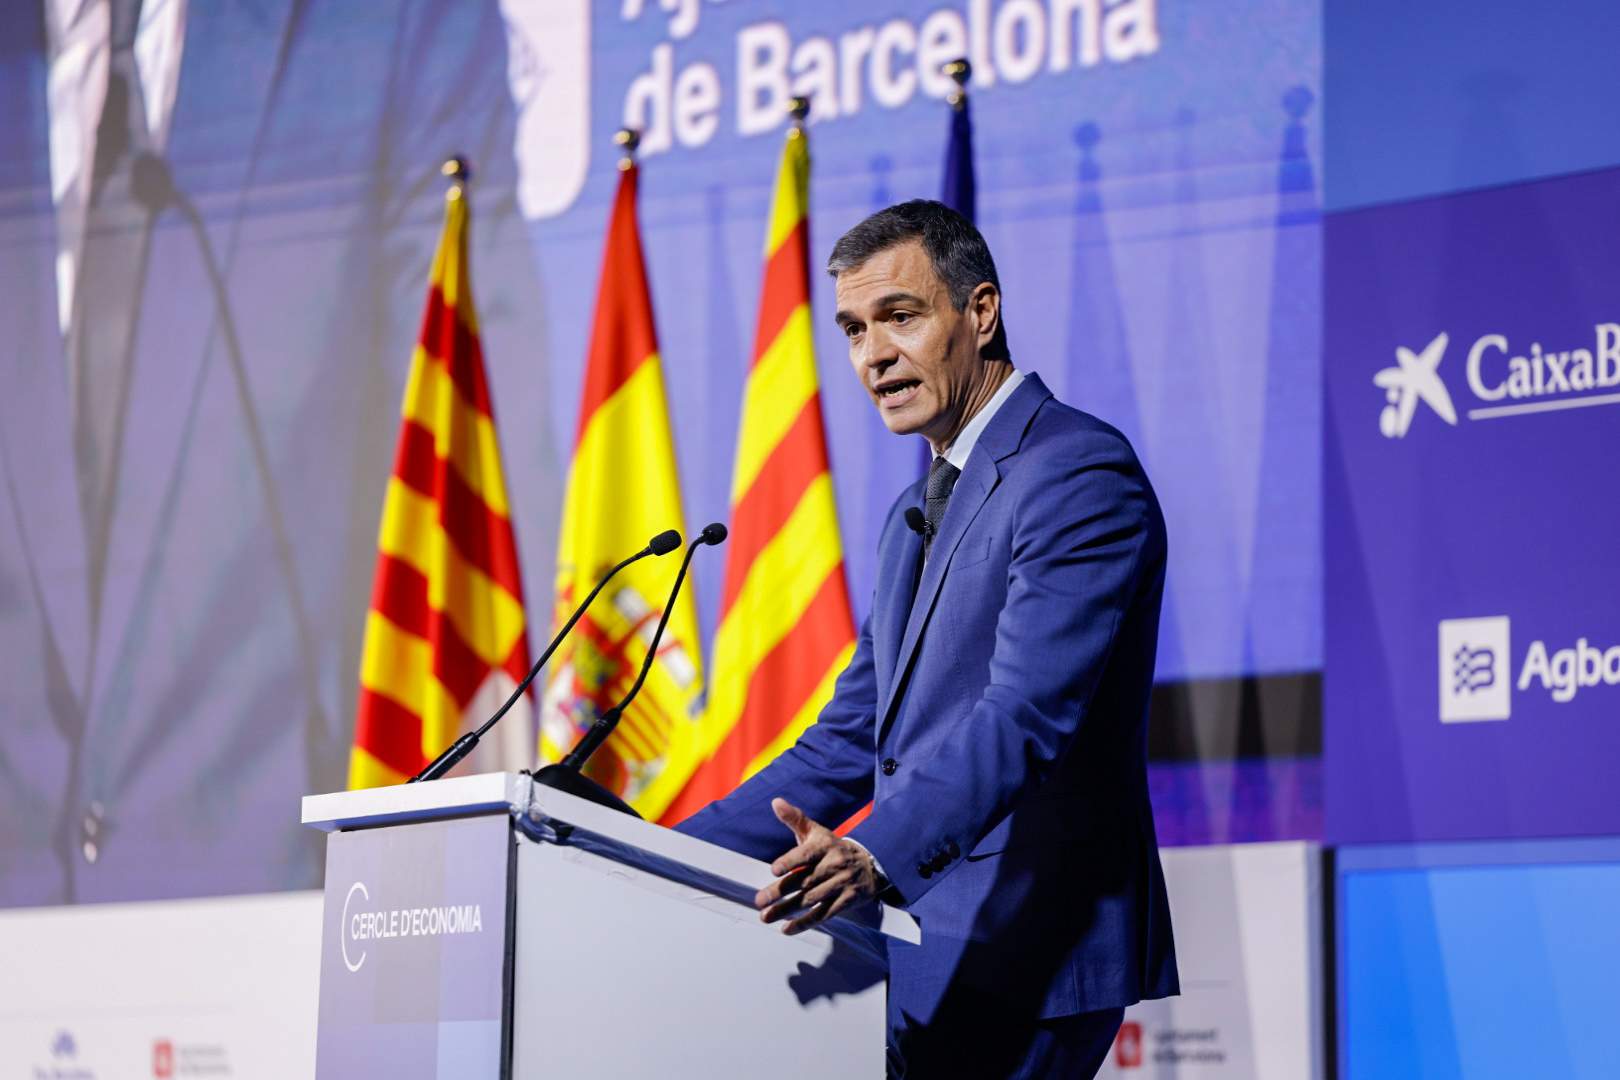 Sánchez referma que "tots els camins condueixen a Illa" i que el Govern "es triarà a Catalunya"